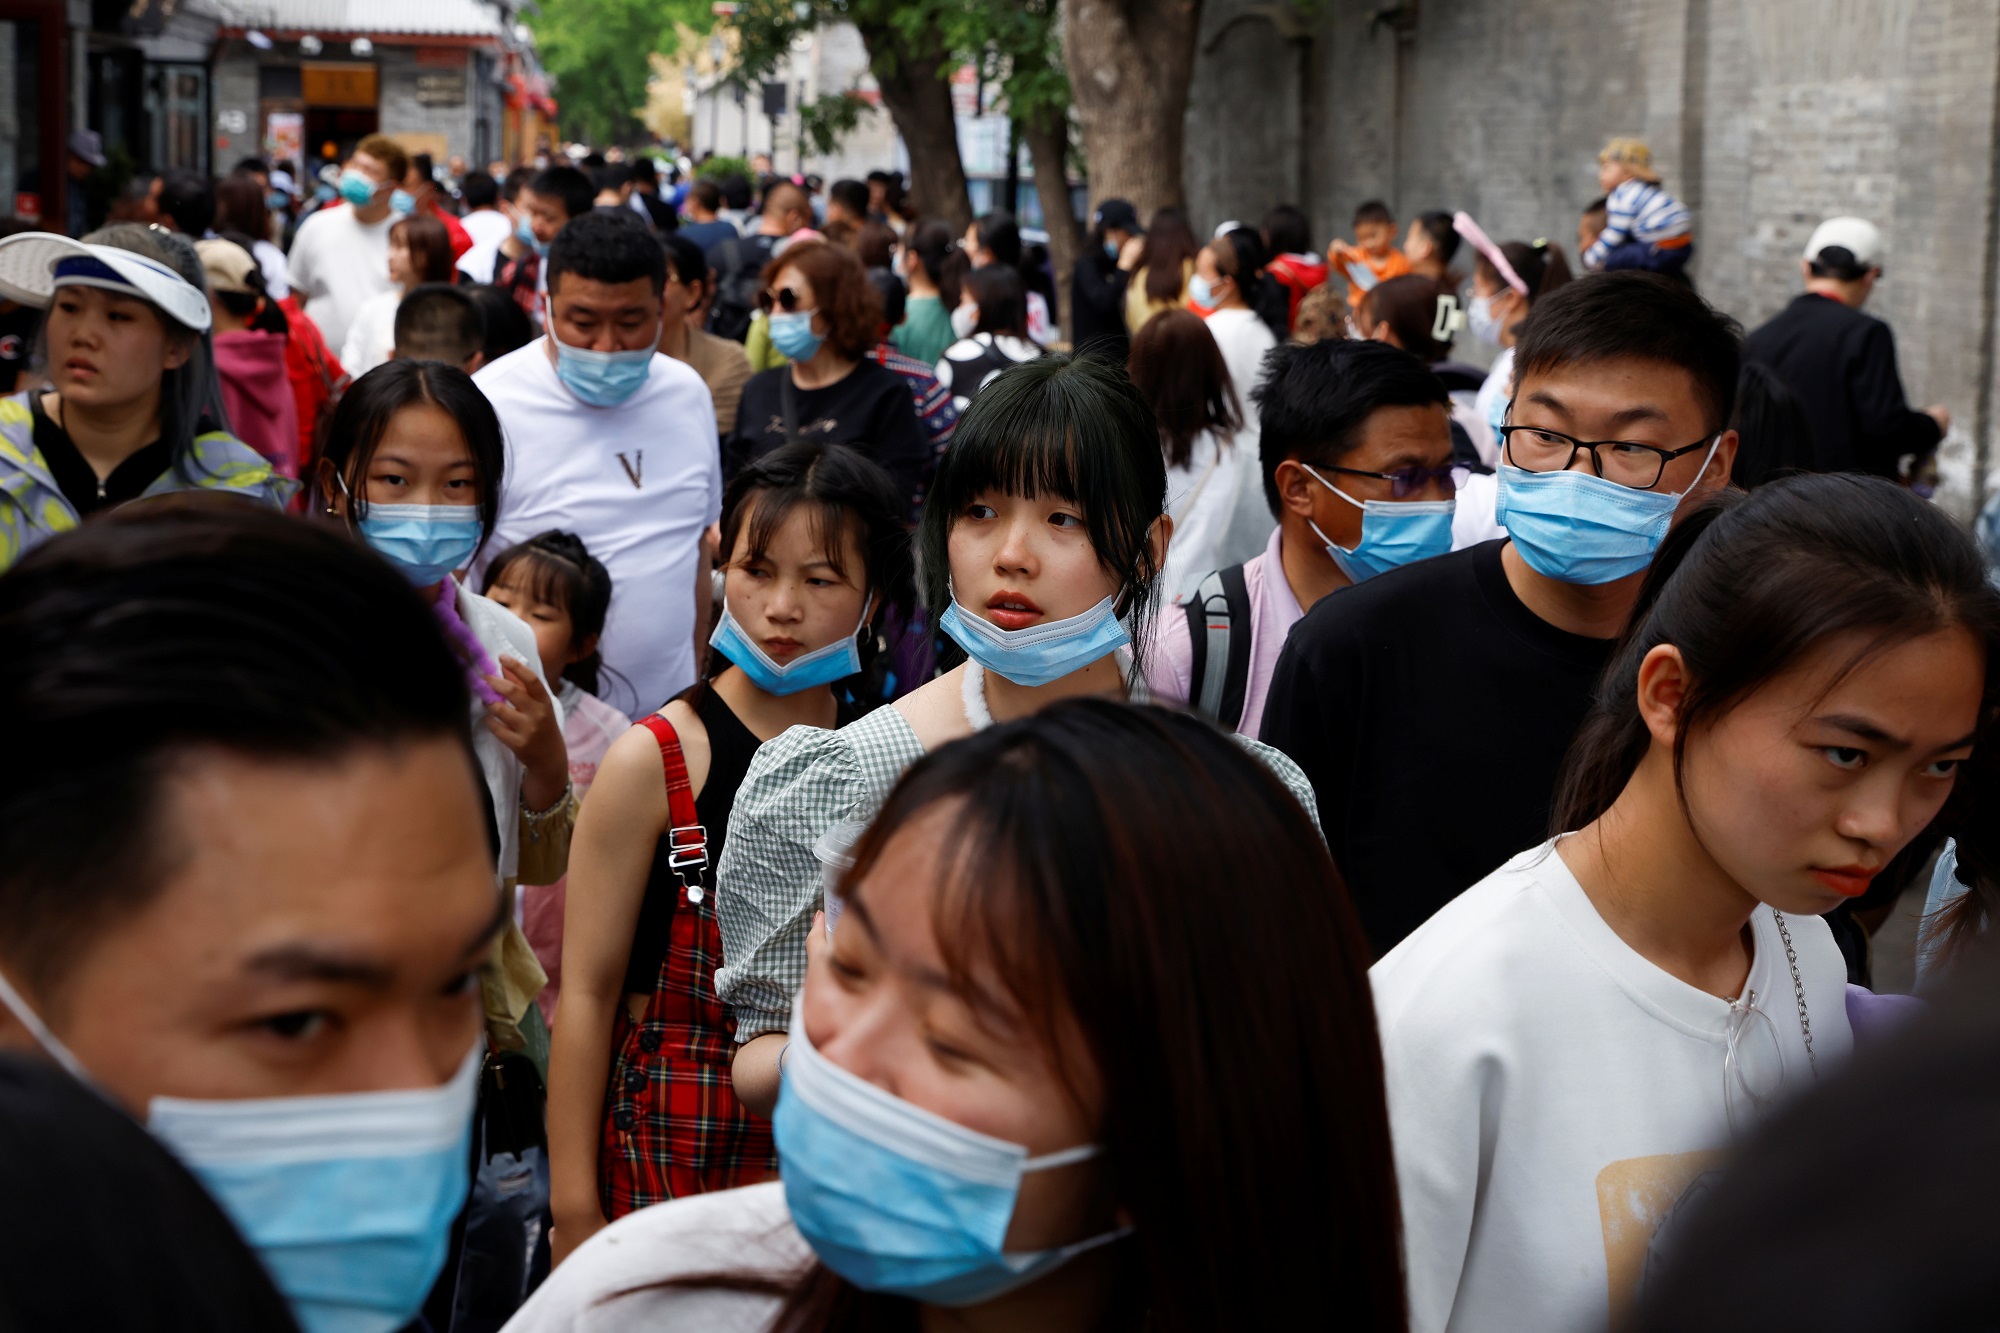 تجمع لصينيين في شارع خلال عطلة عيد العمال. (رويترز)